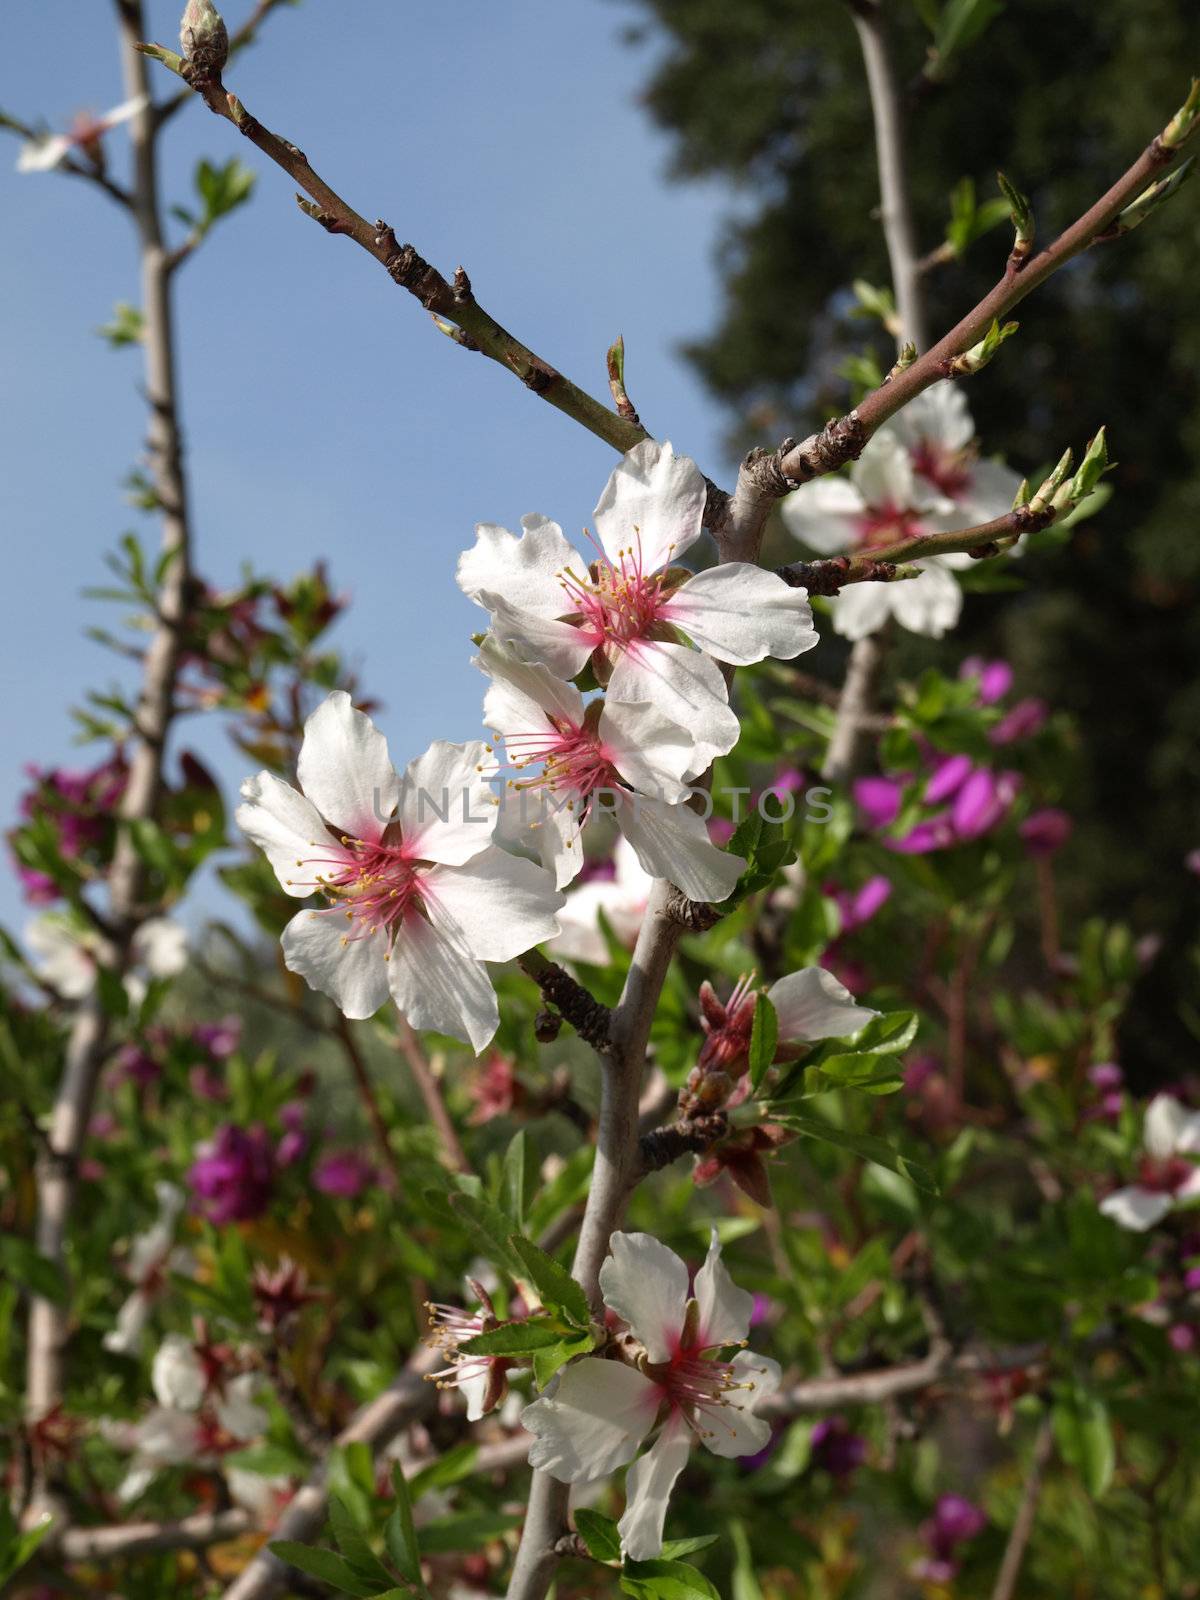 Almond flowers by jbouzou